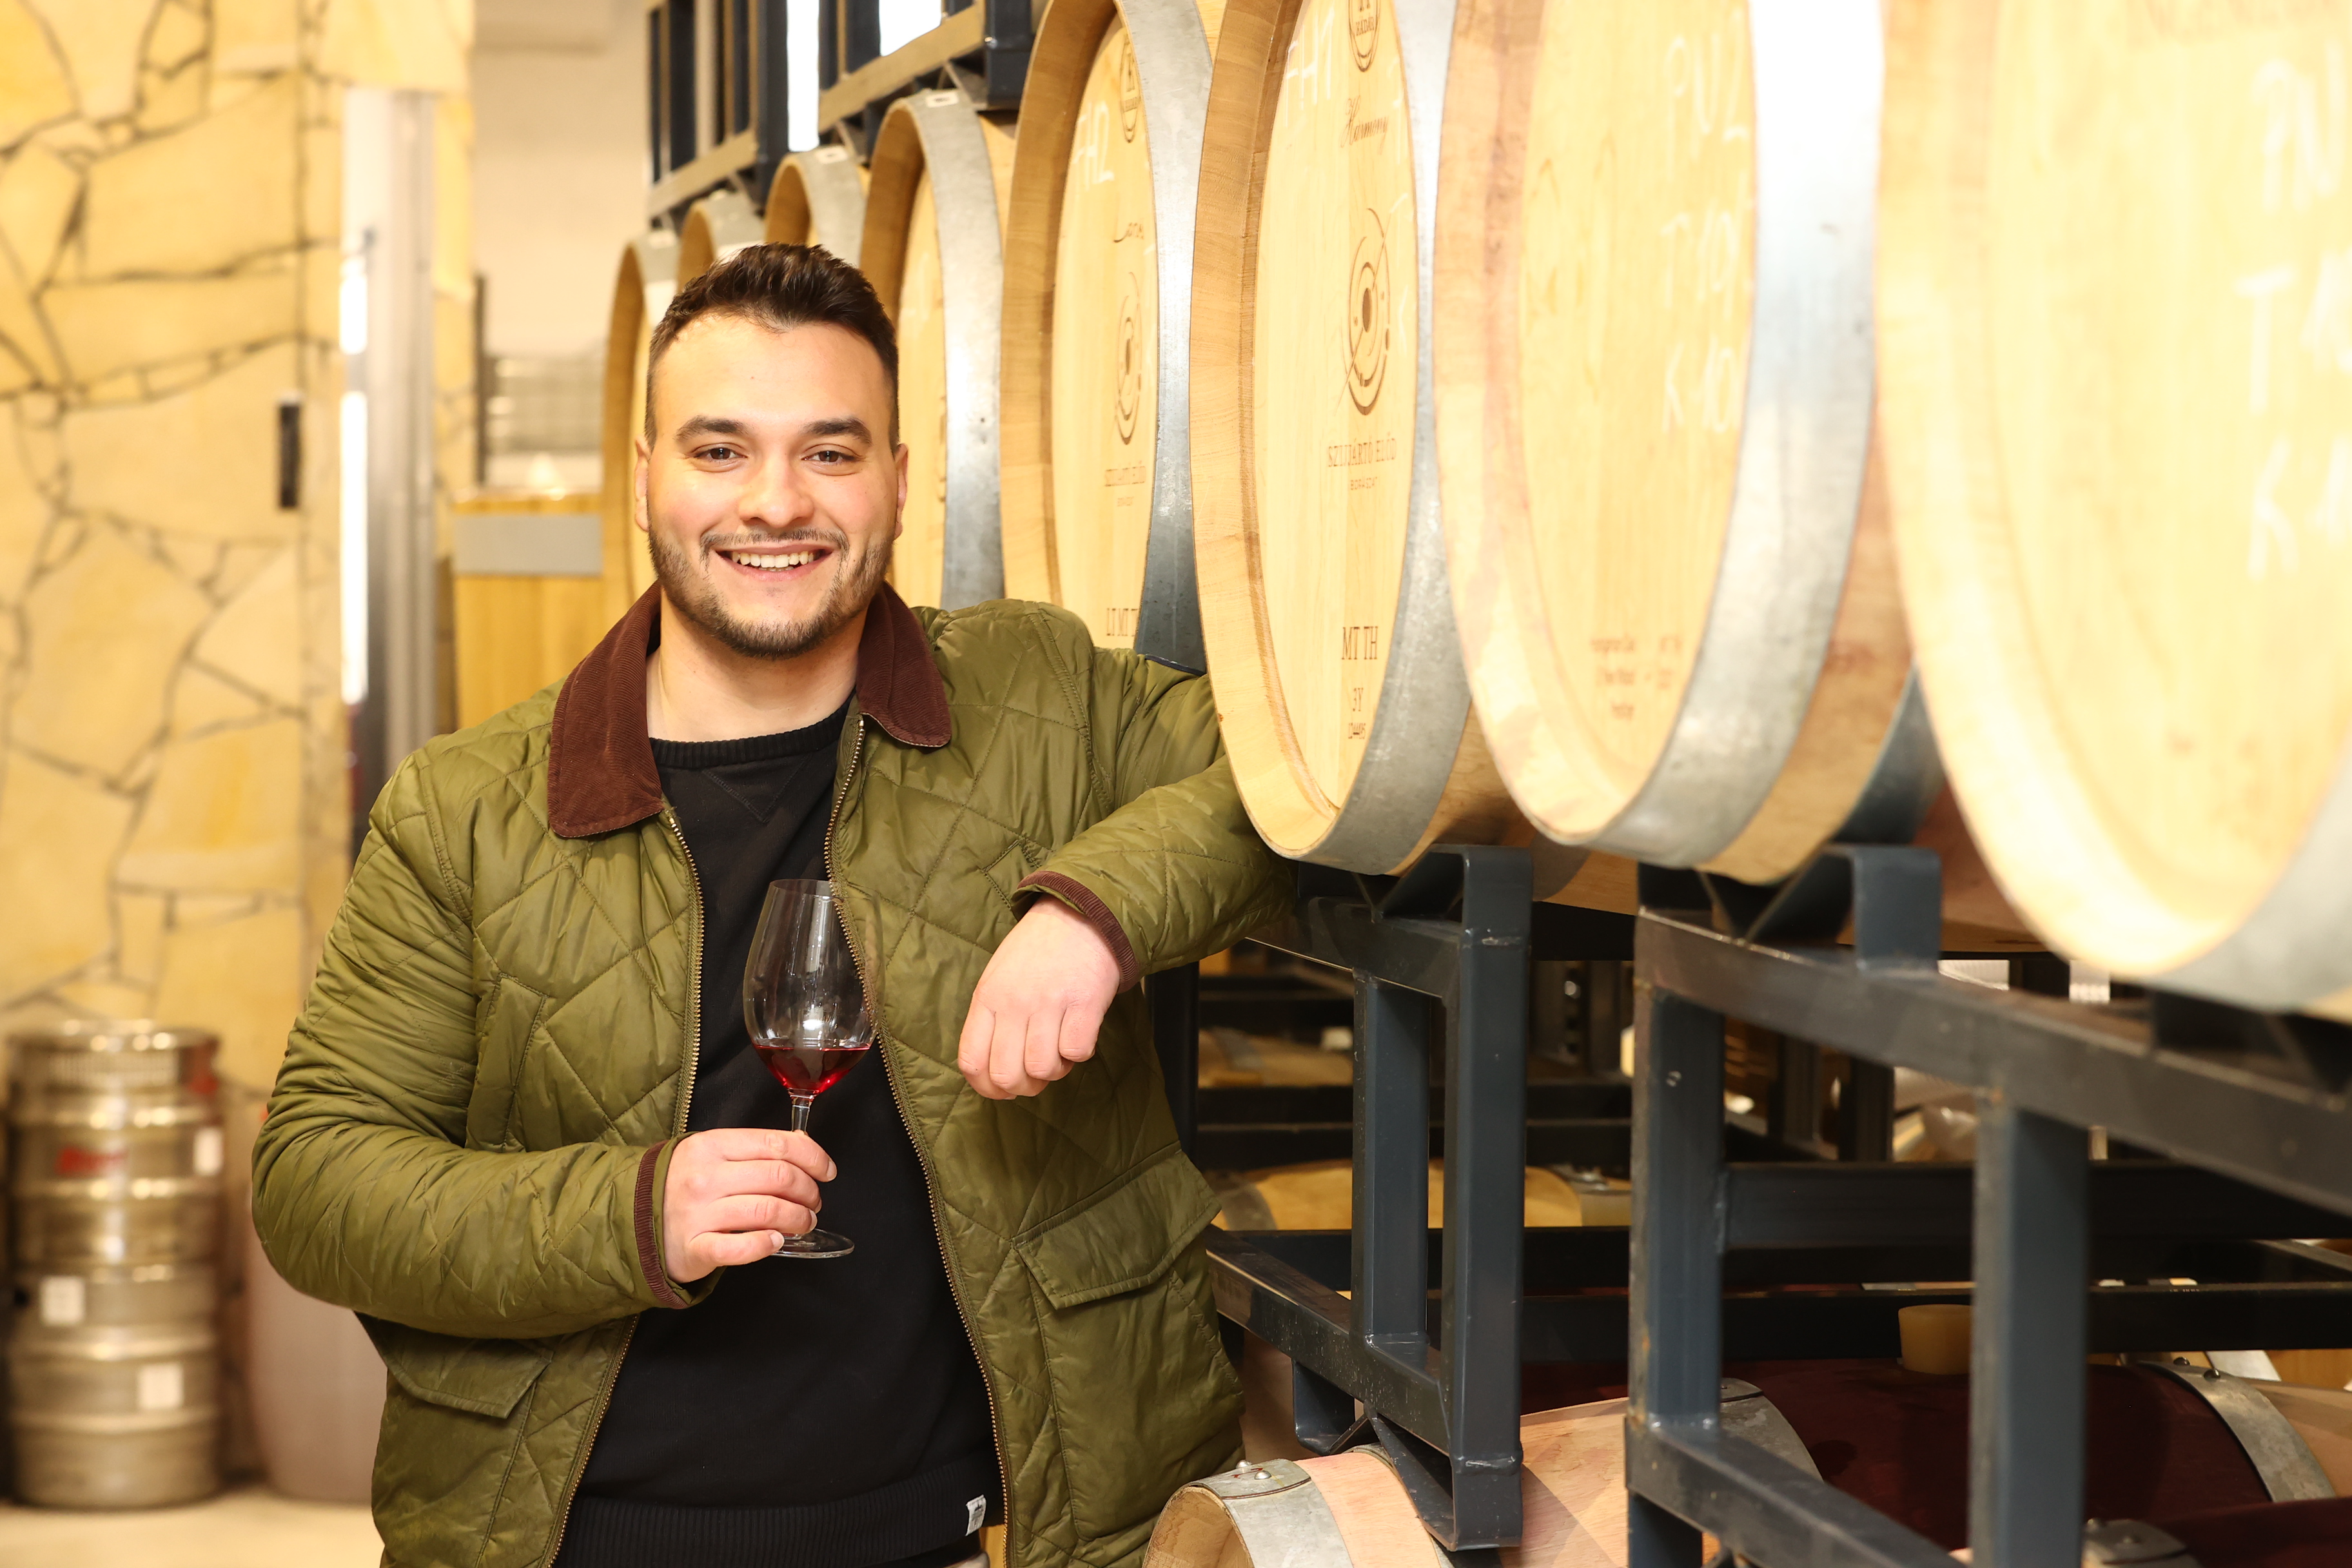 Szijjártó Előd fiatal magyar borászként a világ boraival veszi fel a versenyt